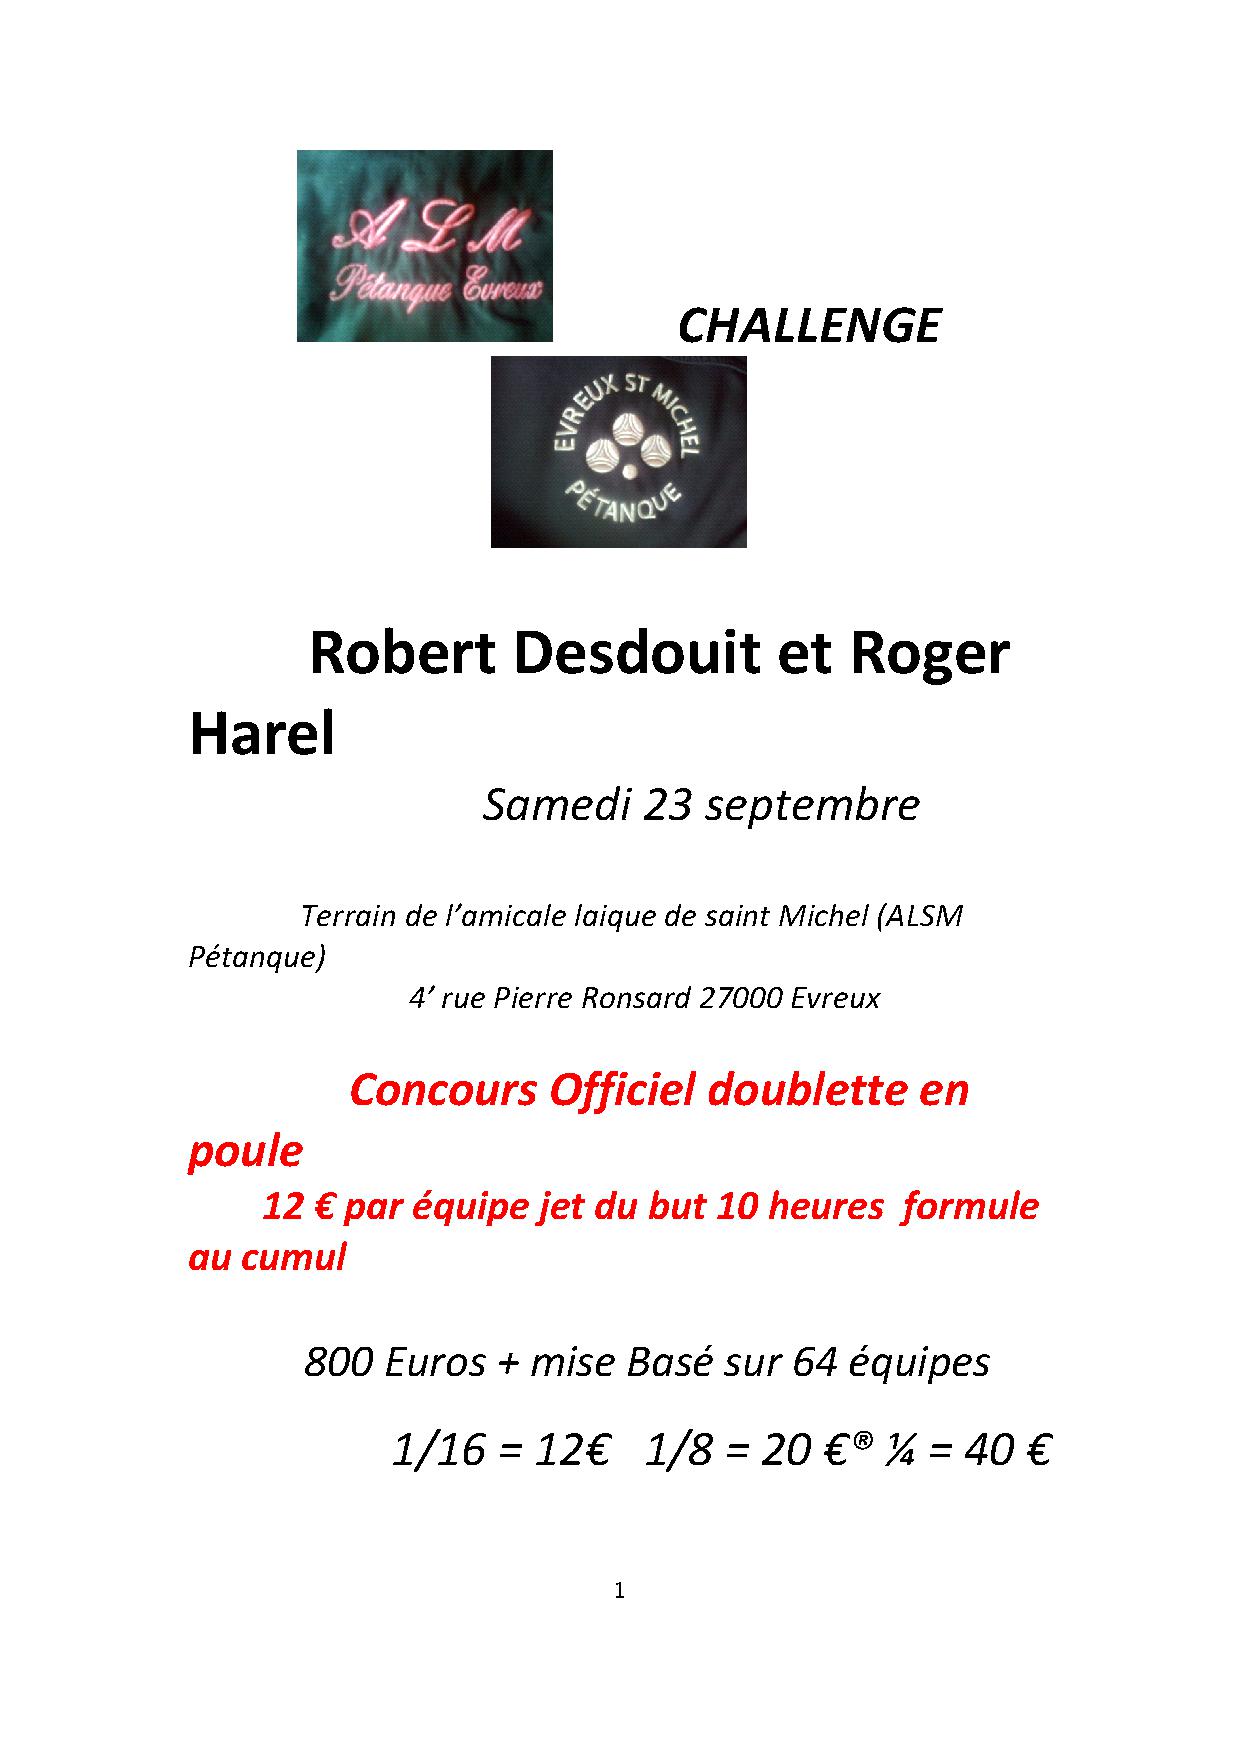 Challenge Robert Desdouit et Roger Harel  le 23 septembre